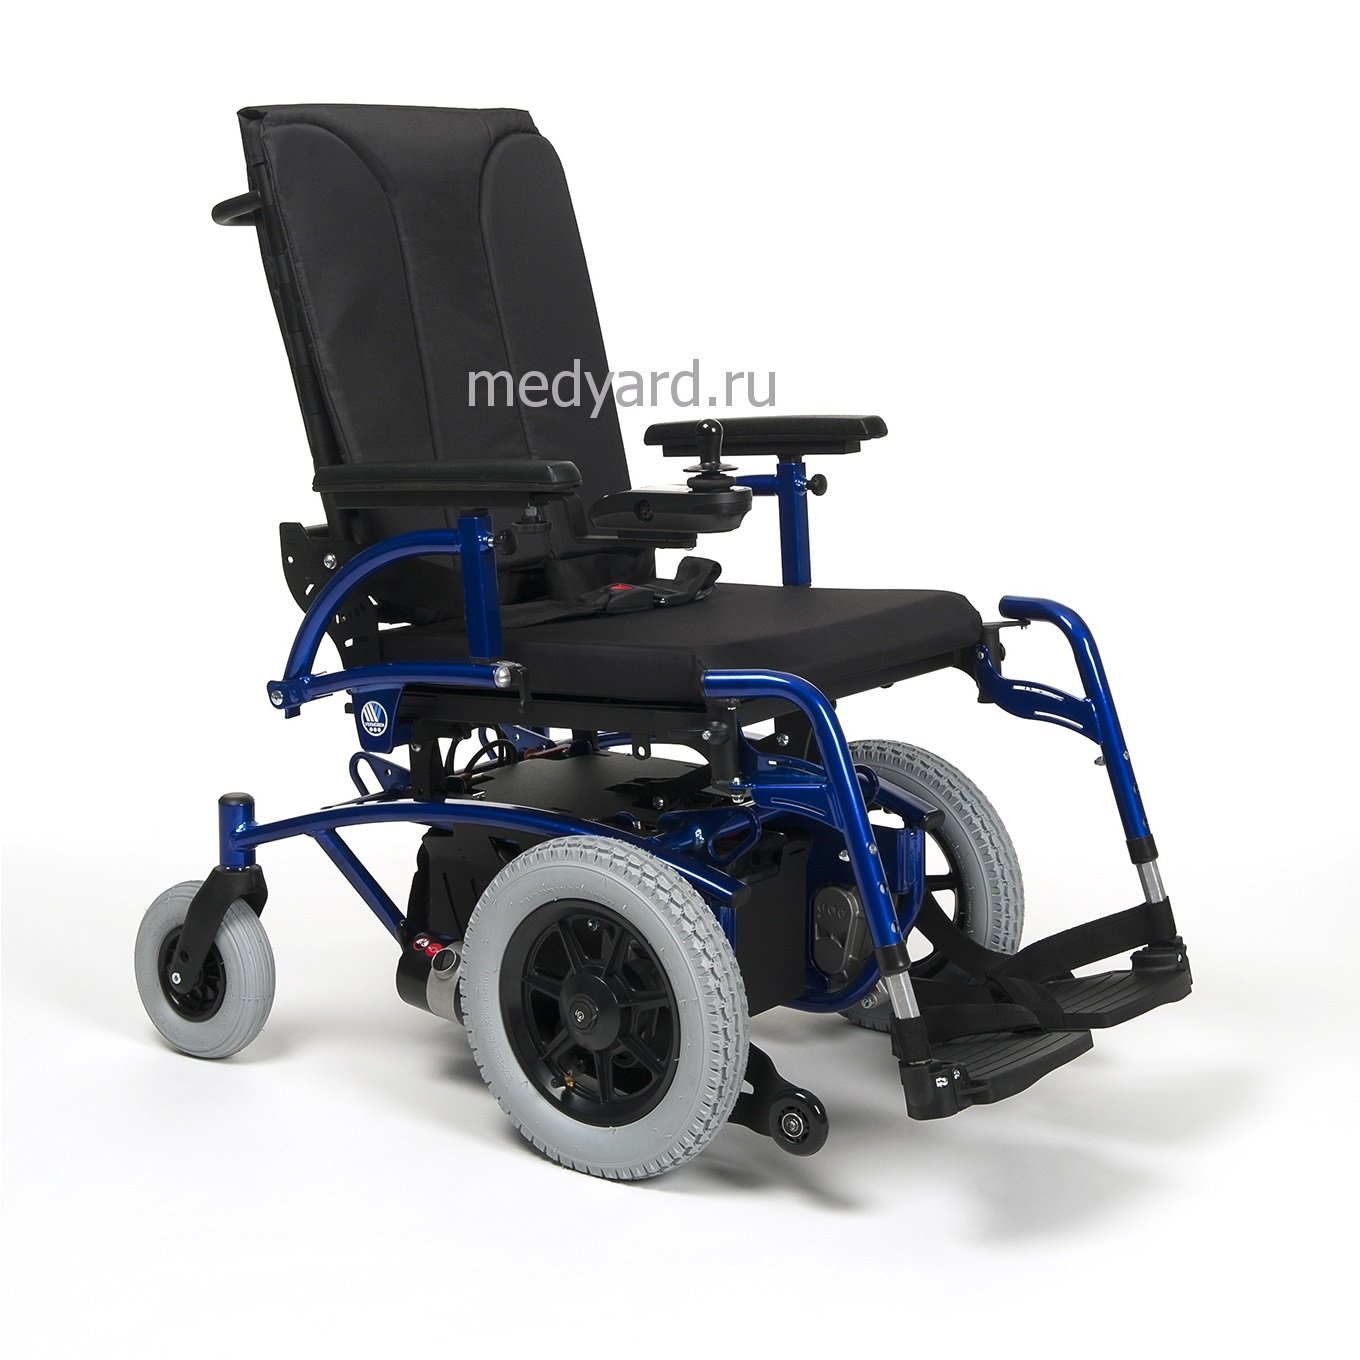 Коляски инвалидные с приводом цена. Кресло-коляска Vermeiren Navix. Коляска Вермейрен инвалидная. Кресло-коляска Vermeiren 925. Vermeiren коляска инвалидная.